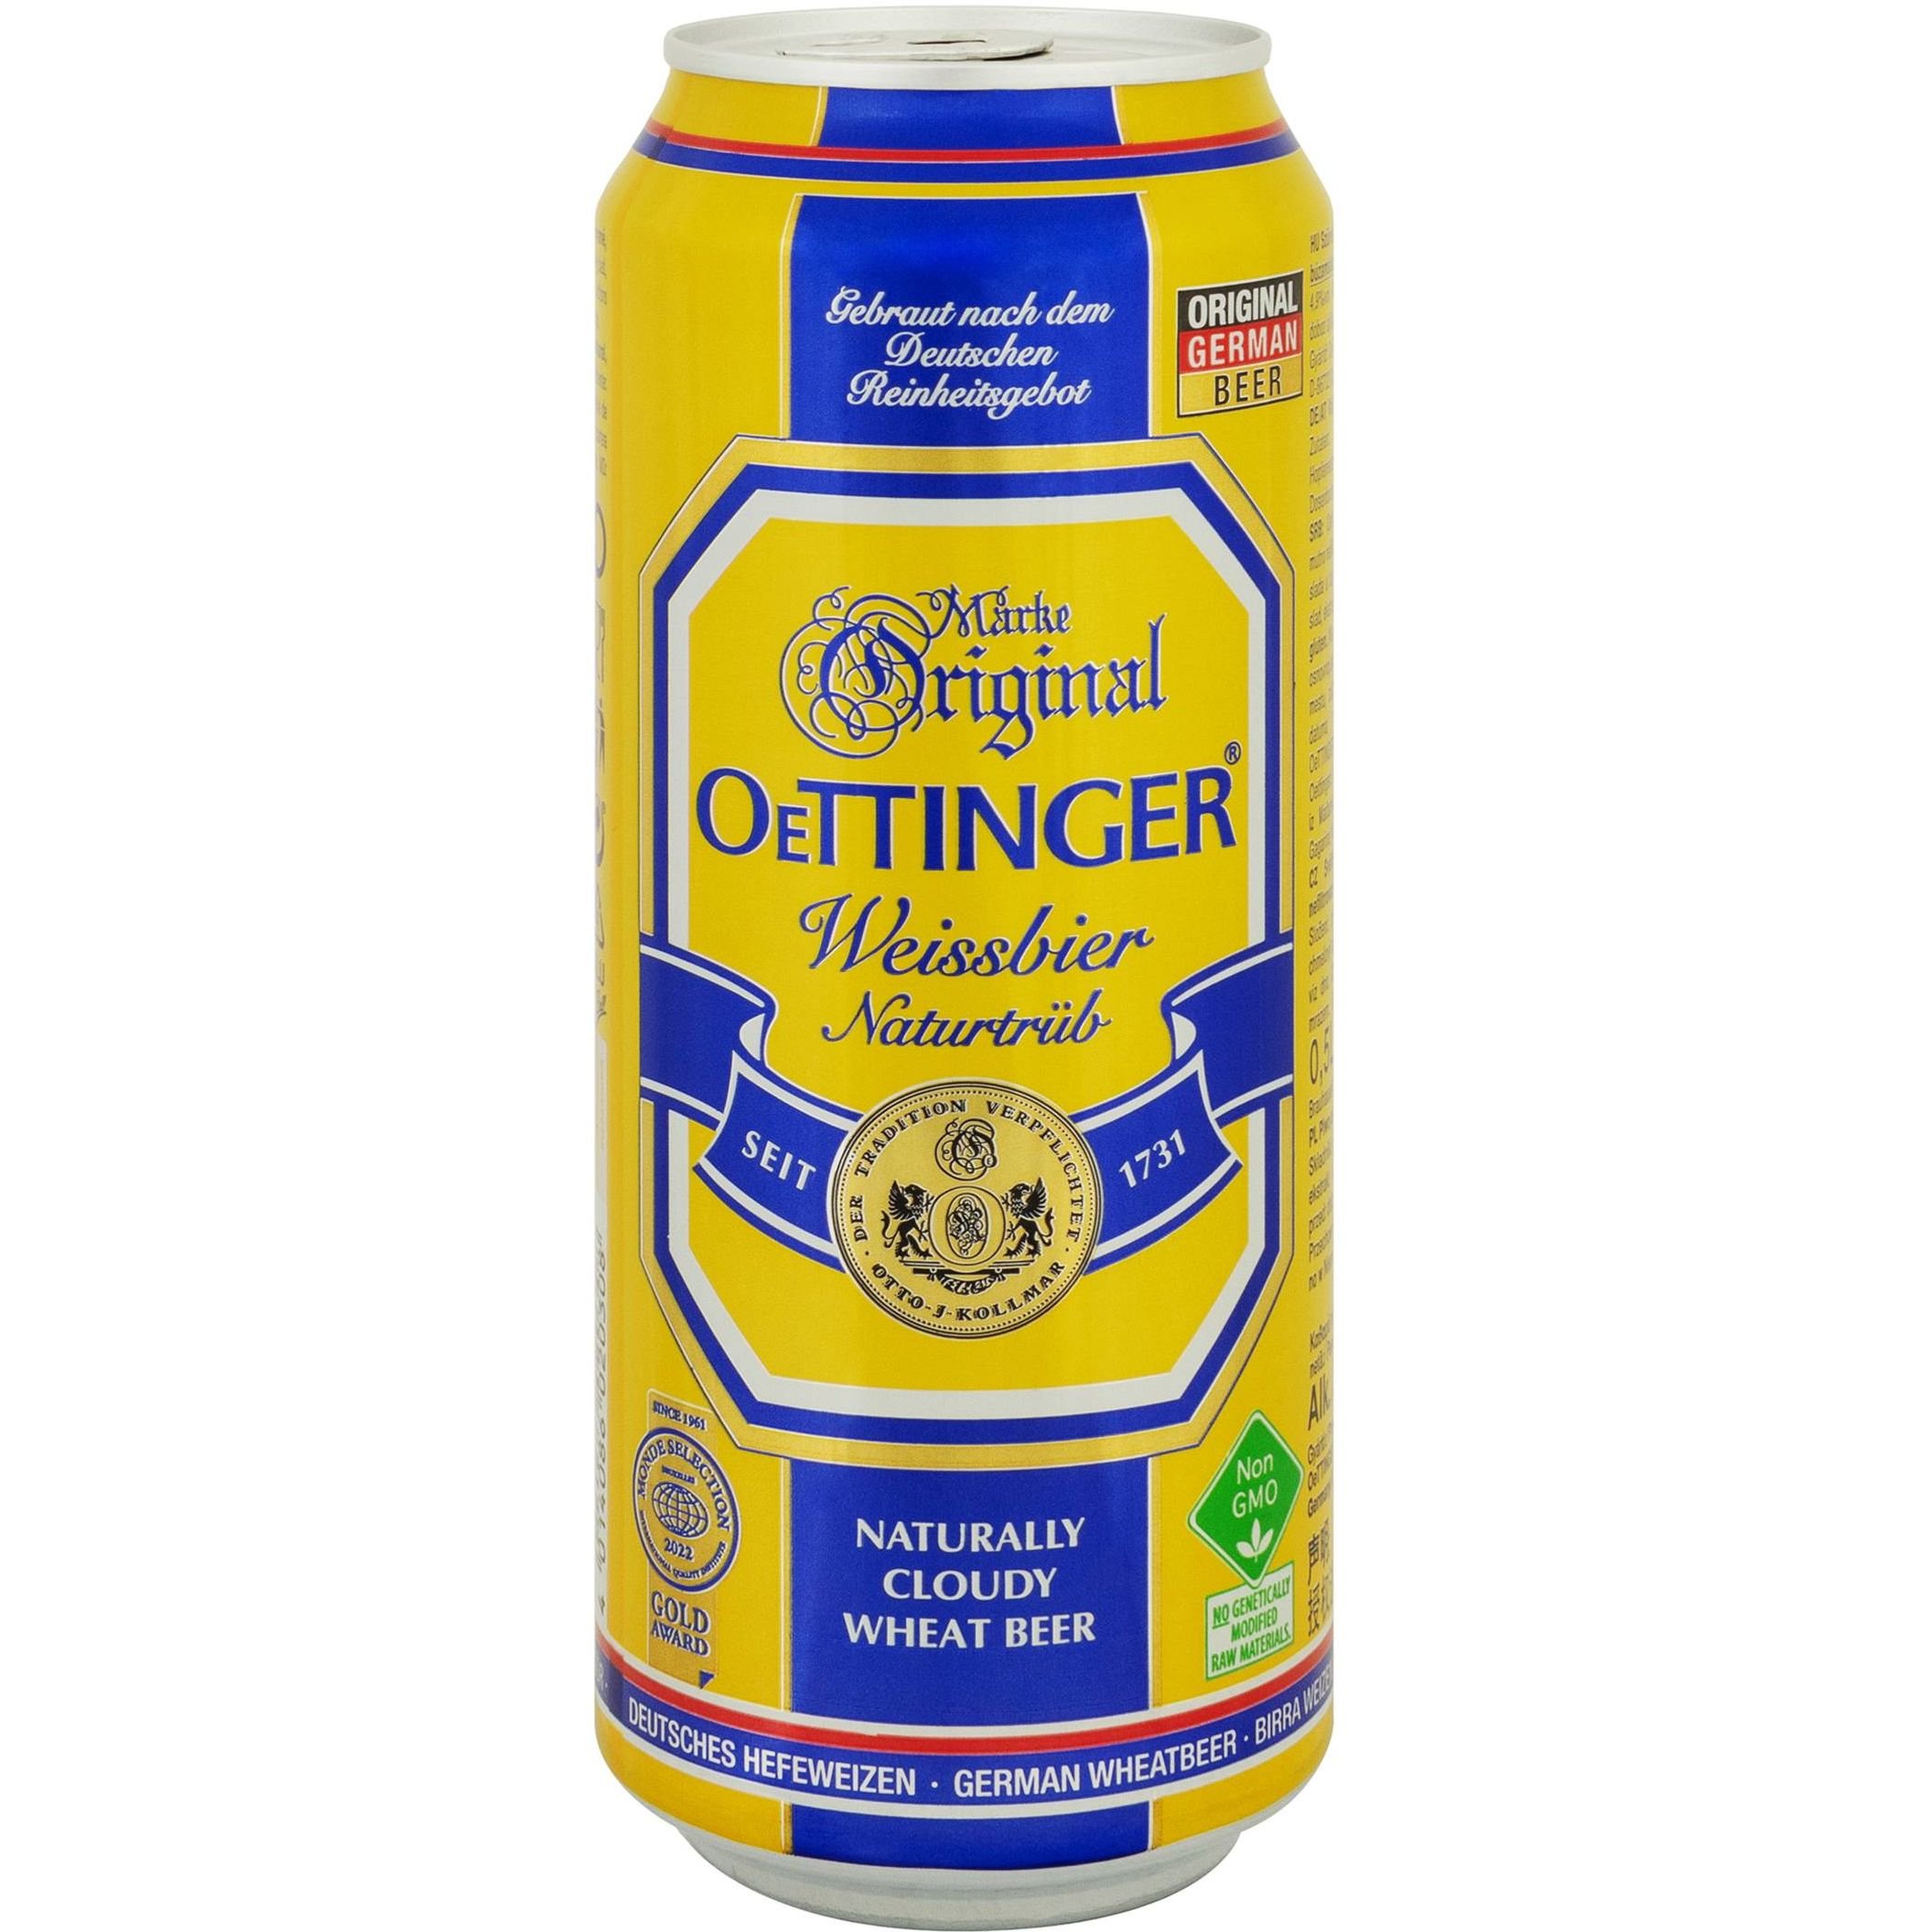 Пиво Oettinger Weissbier светлое нефильтрованное 4.9% ж/б 0.5 л (910699) - фото 1